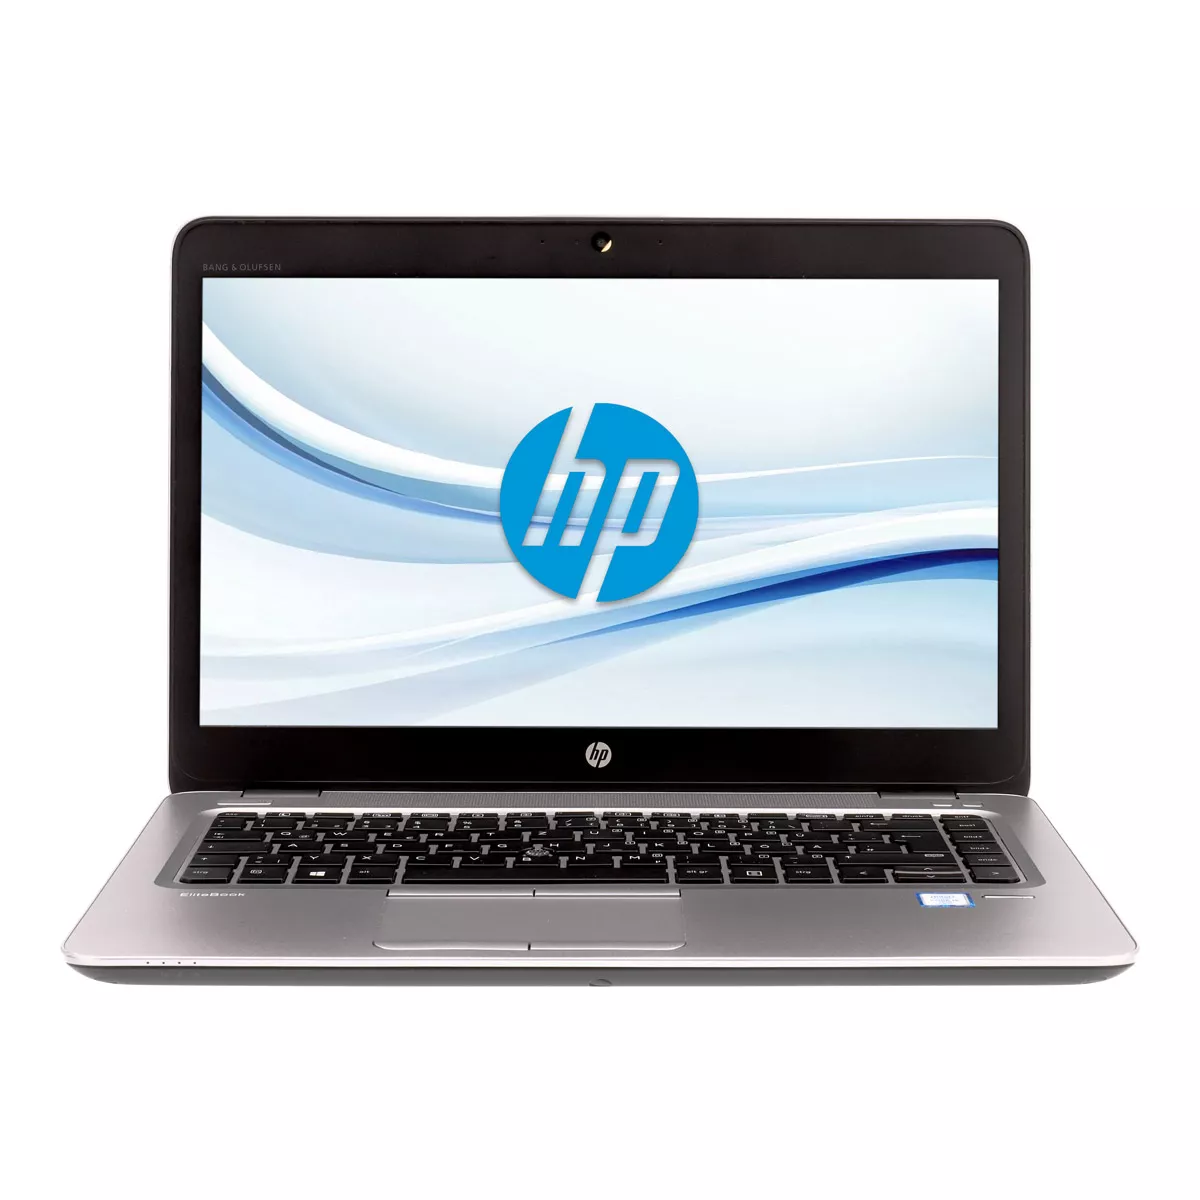 HP EliteBook 840 G4 Core i5 7300U Full-HD 240 GB M.2 SSD Webcam A